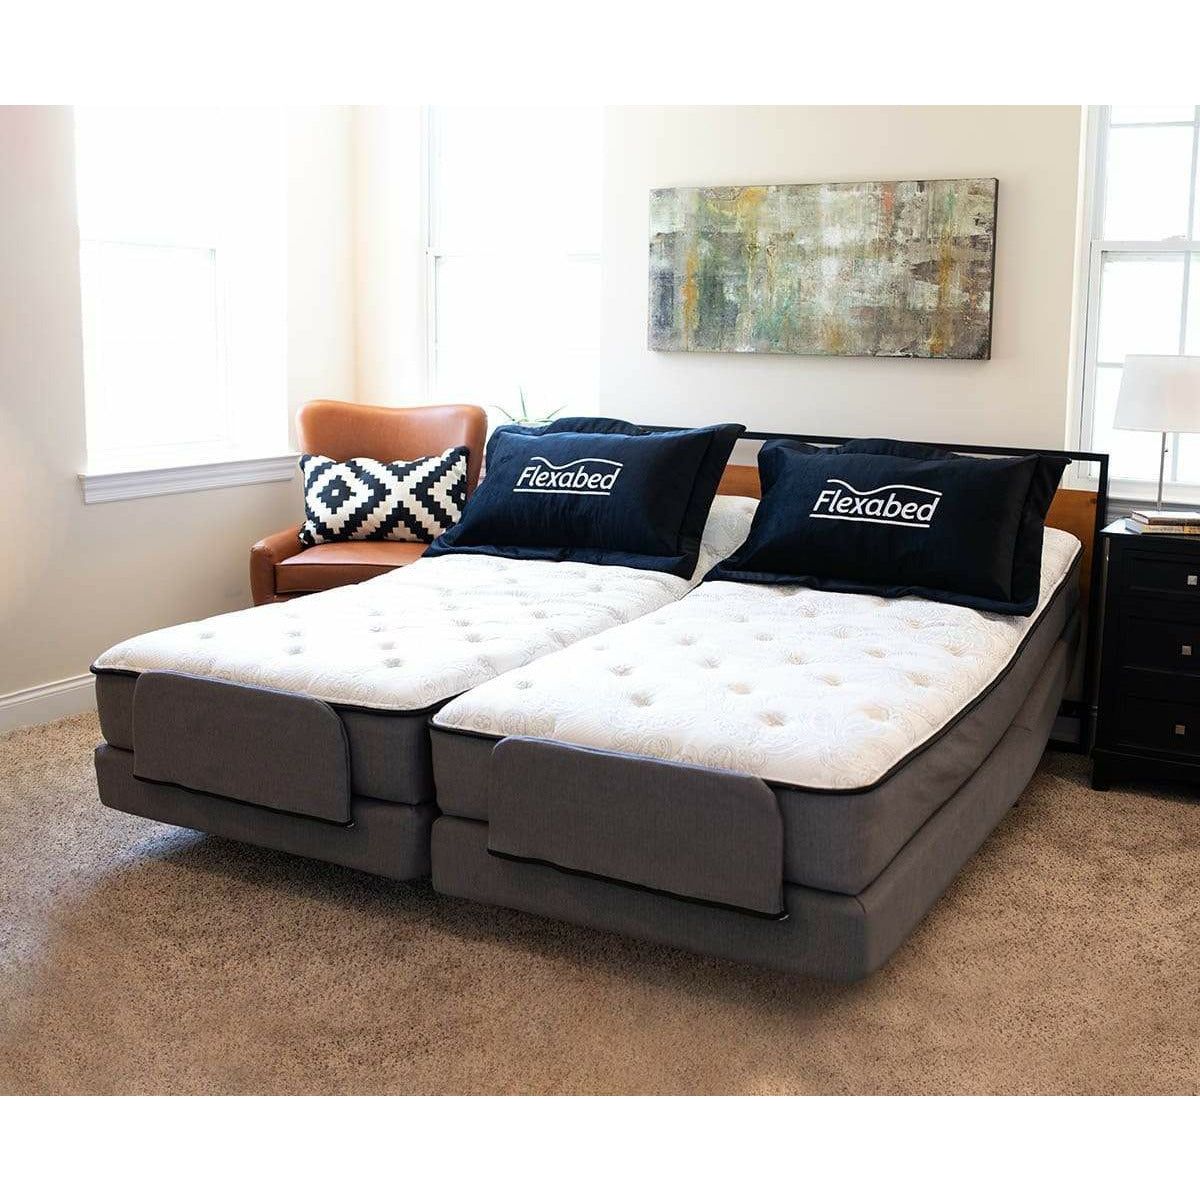 Flexabed Beds by Flexabed FLEXABED Premier Full Adjustable Bed